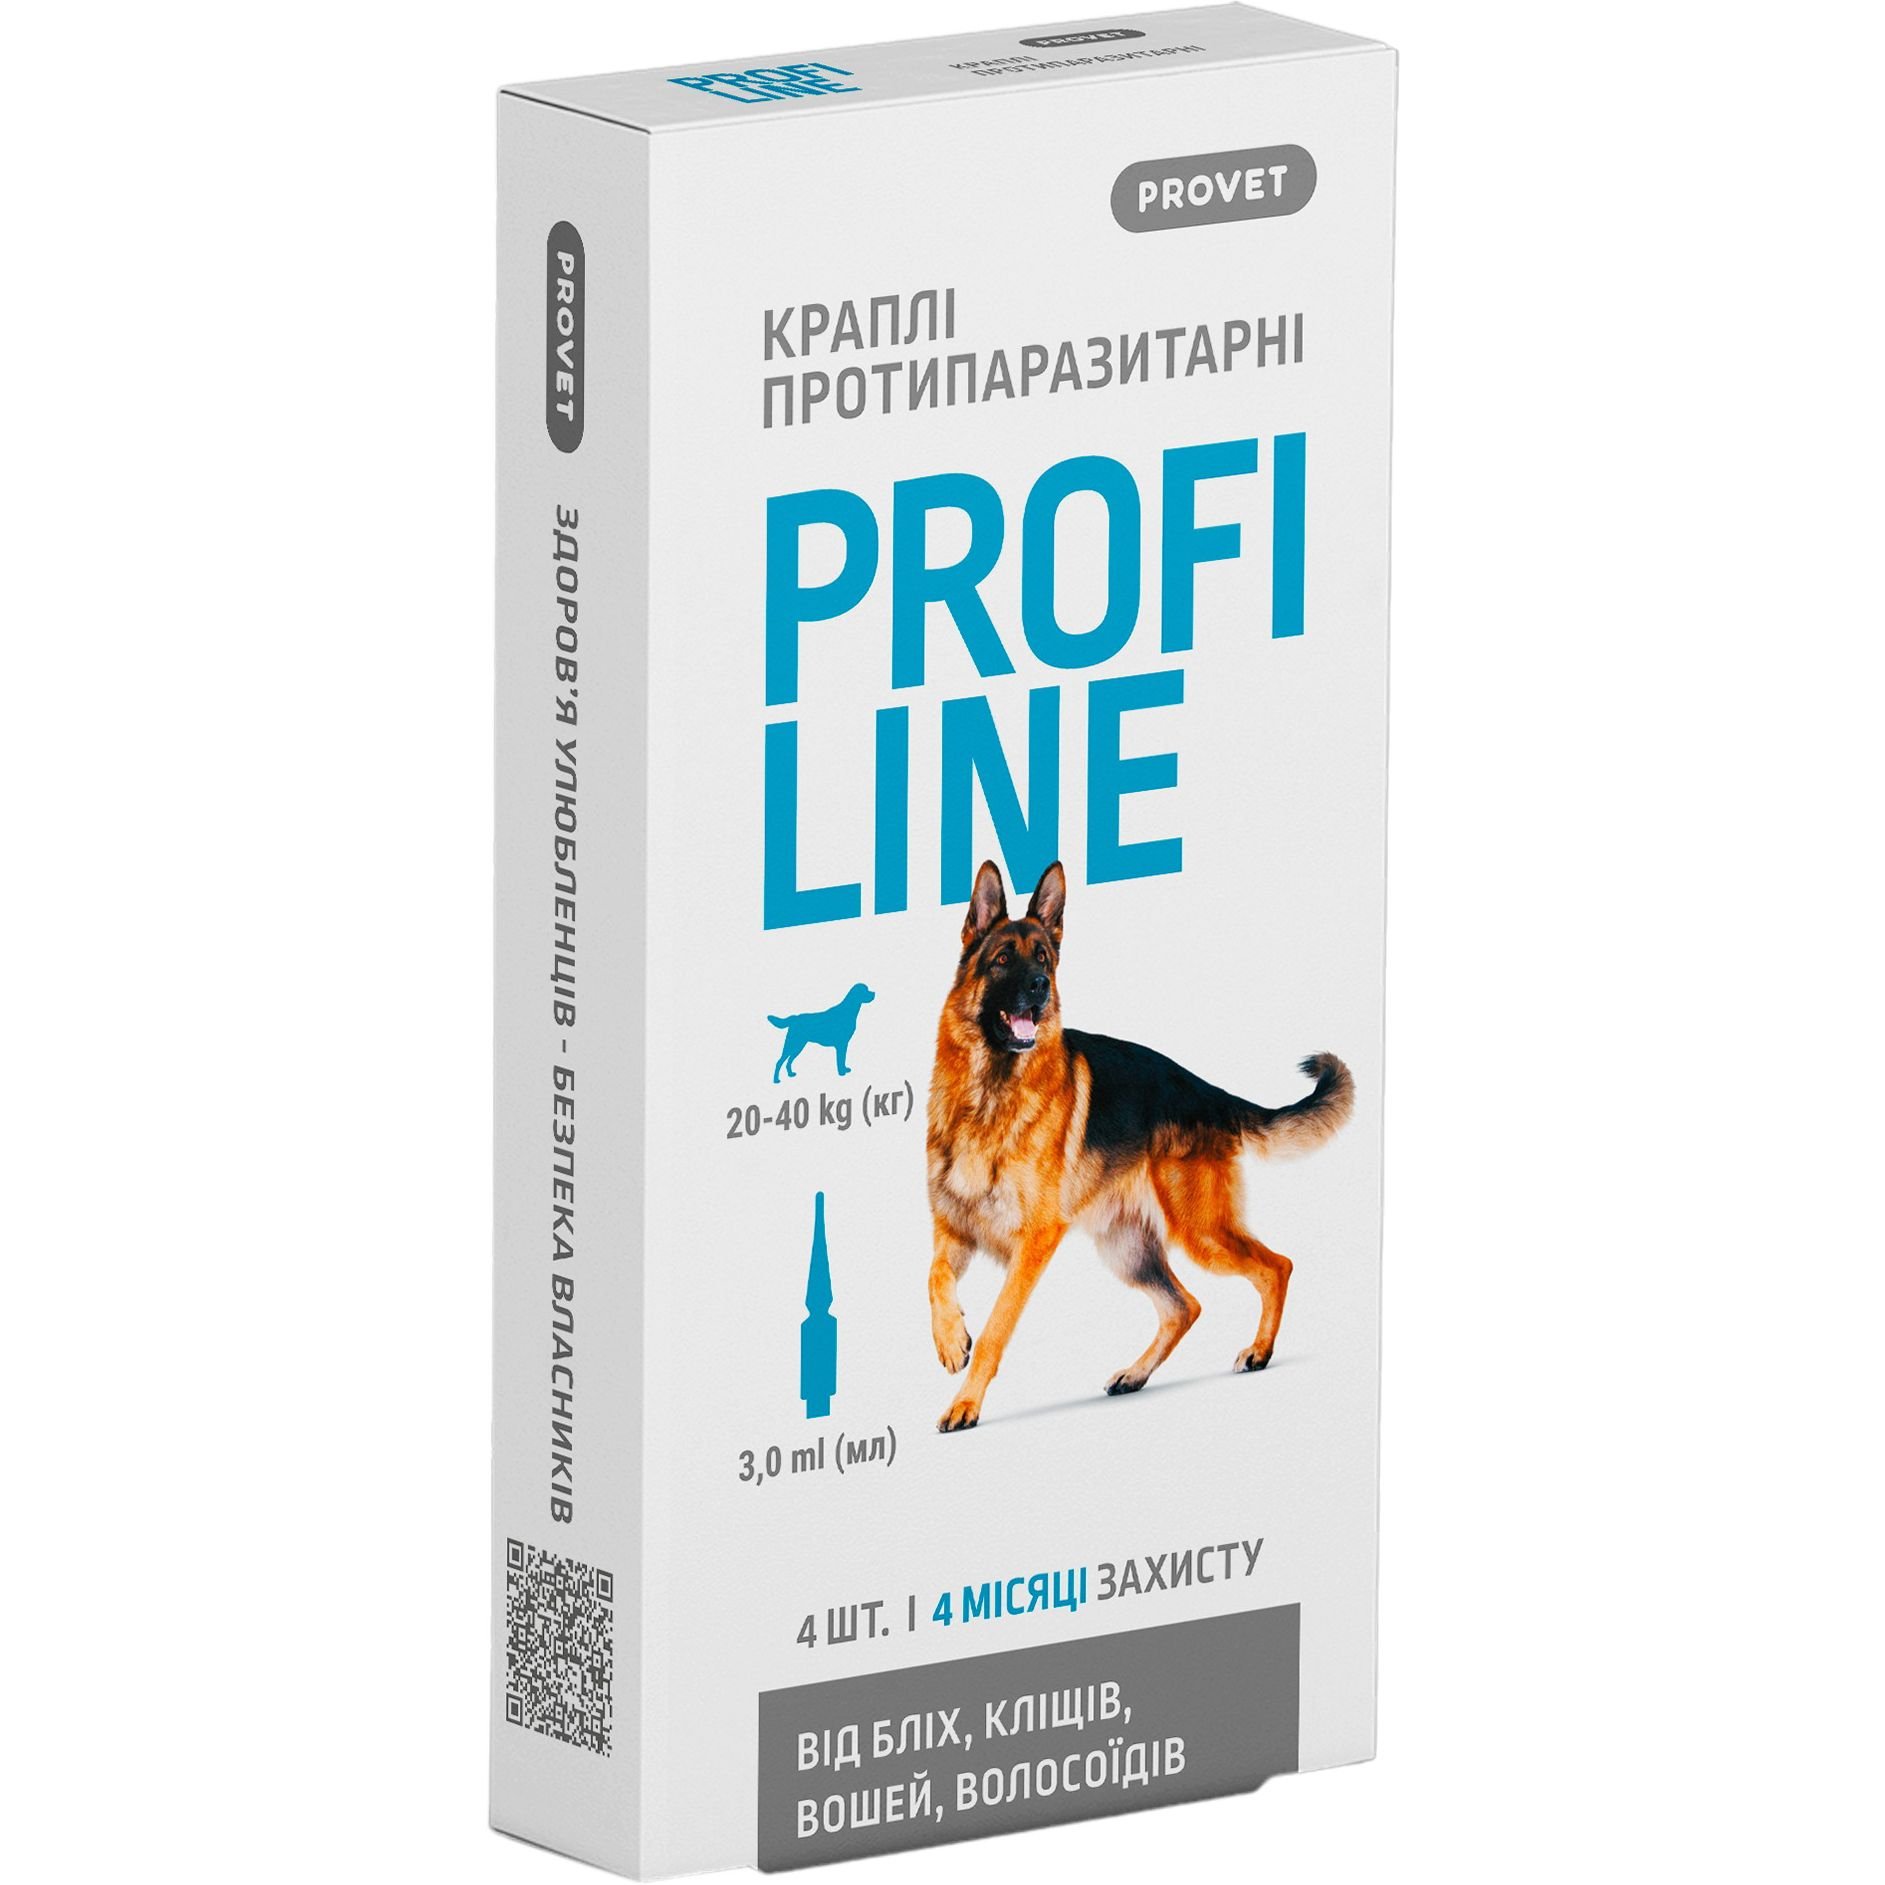 Краплі на холку для собак ProVET Profiline від зовнішніх паразитів, від 20 до 40 кг, 4 піпетки по 3 мл - фото 1